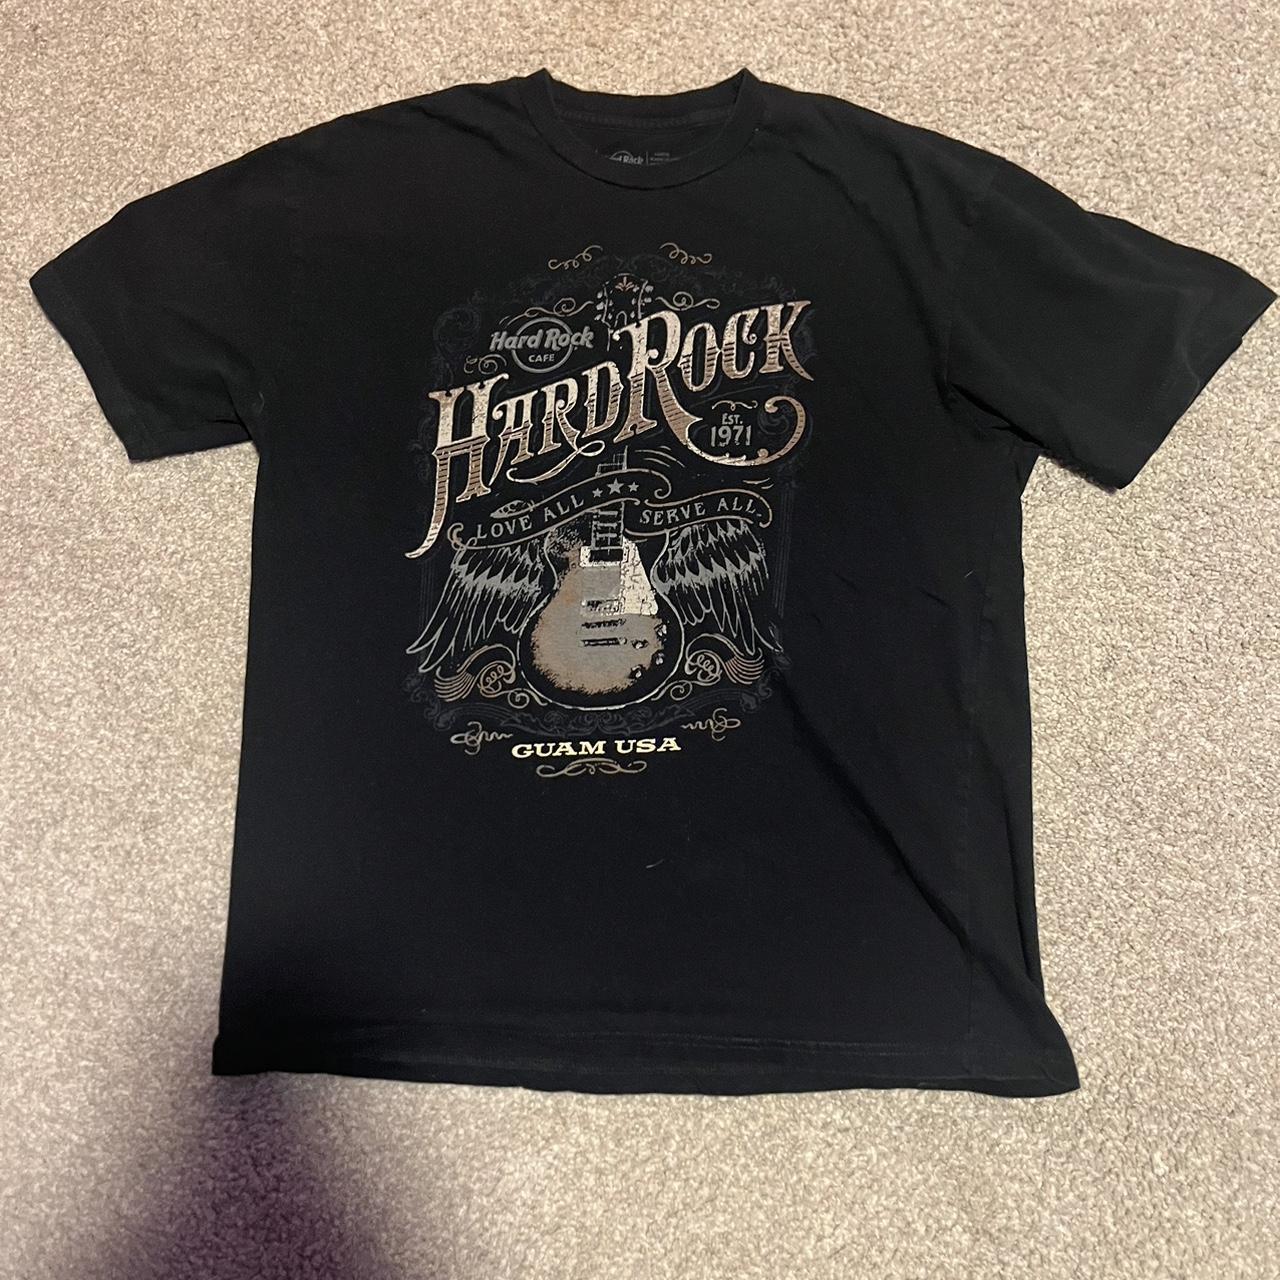 Hard Rock Cafe Men's Black T-shirt